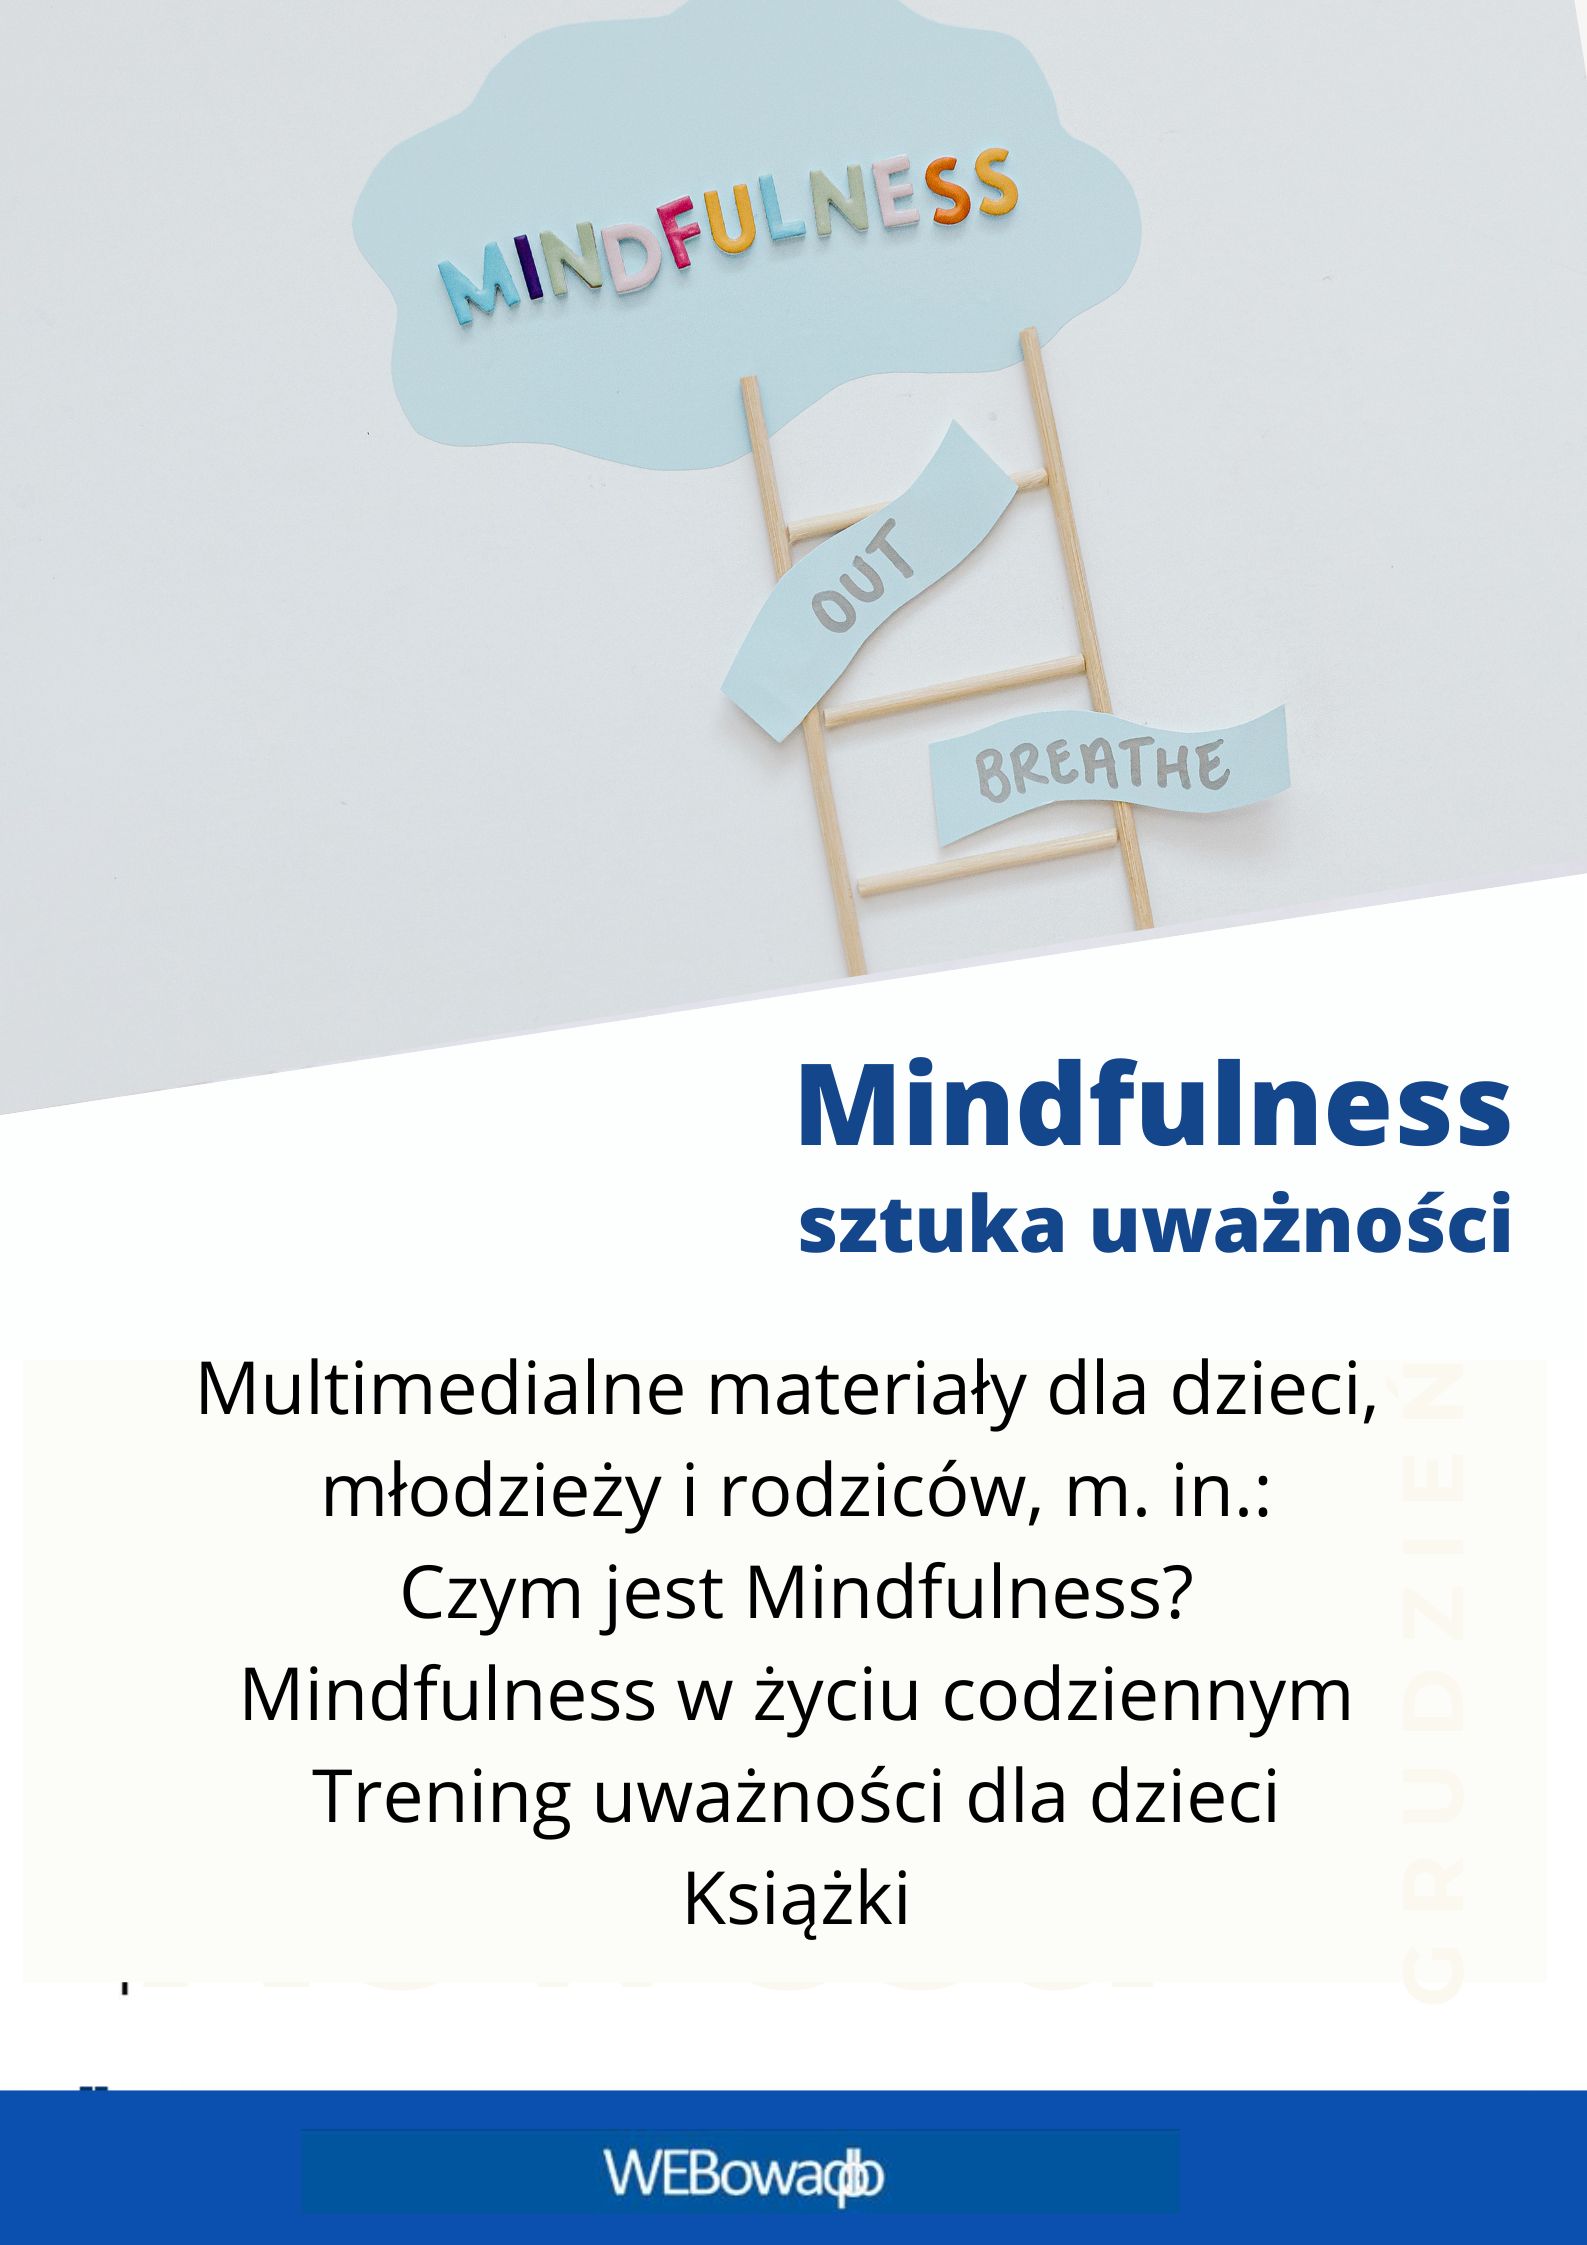 Plakat prostokątny w pionie: u góry obrazek z kolorowym napisem Mindfulness; poniżej napis na białym tle: Mindfulness - sztuka uważności. Multimedialne materiały dla dzieci, młodzieży i rodziców, m. in.: Czym jest Mindfulness? Mindfulness w życiu codziennym, Trening uważności dla dzieci, Książki; na dole na niebieskim pasku napis: WEBowaDBP